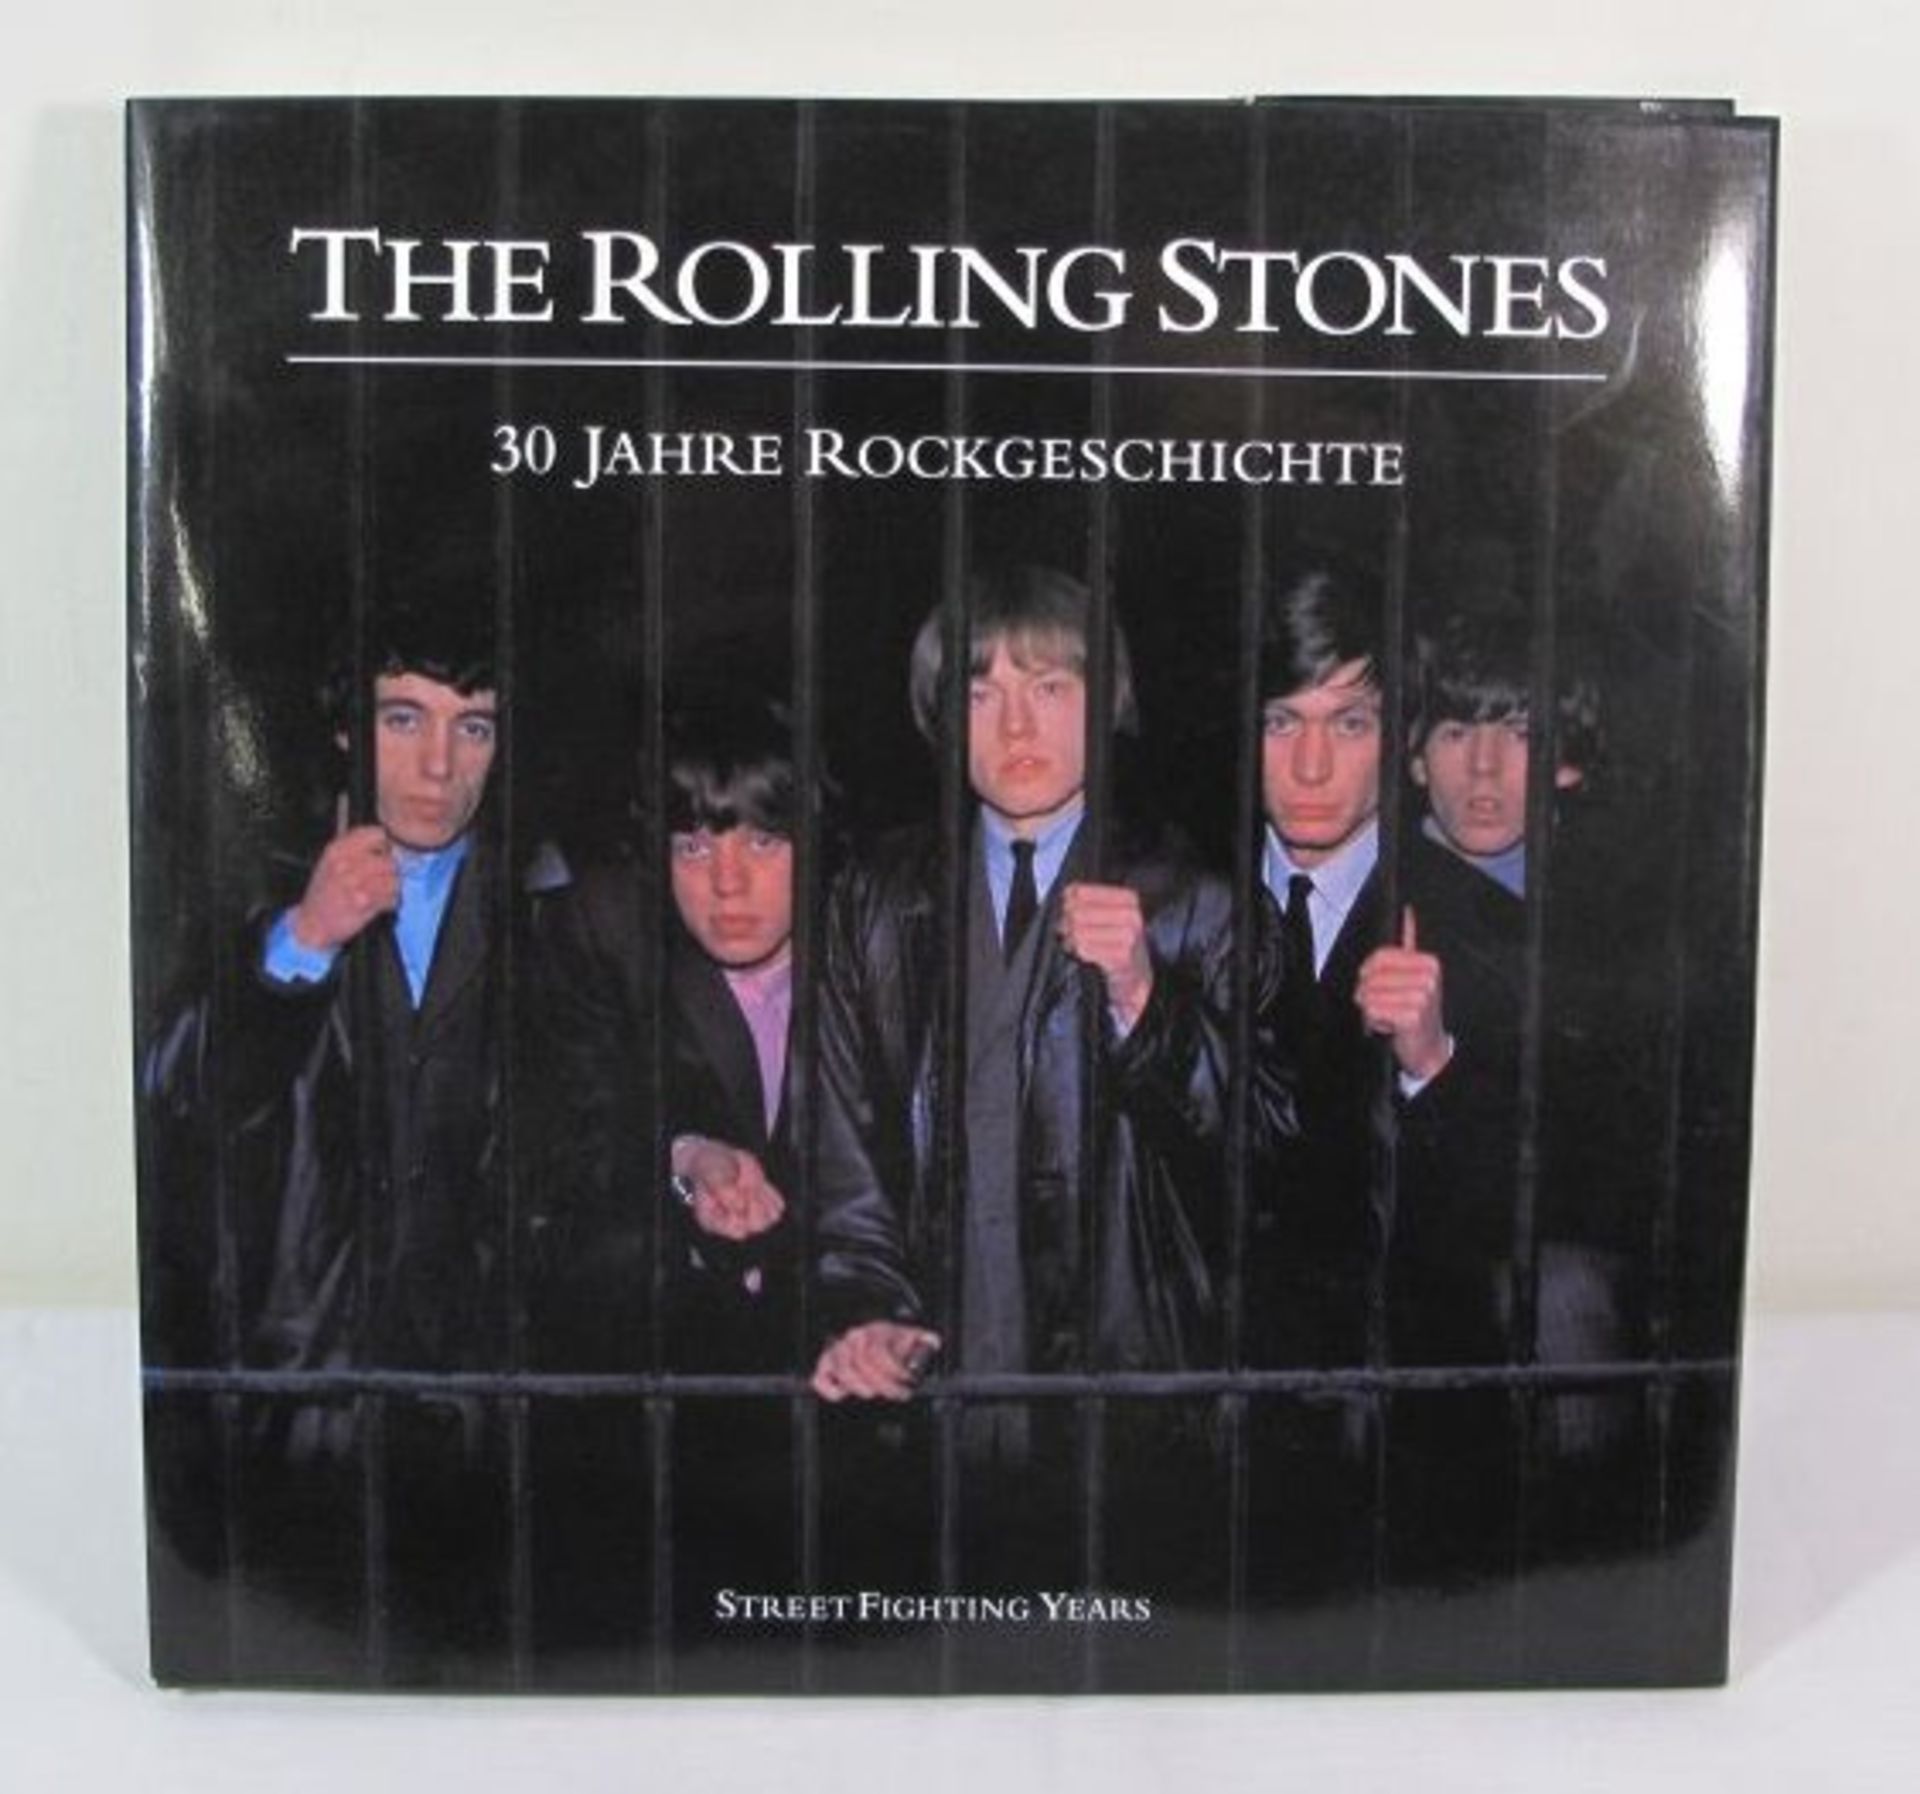 The Rolling Stones - 30 Jahre Rockgeschichte, limitierte Ausgabe Nr. 2145, 1. Auflage 1993.